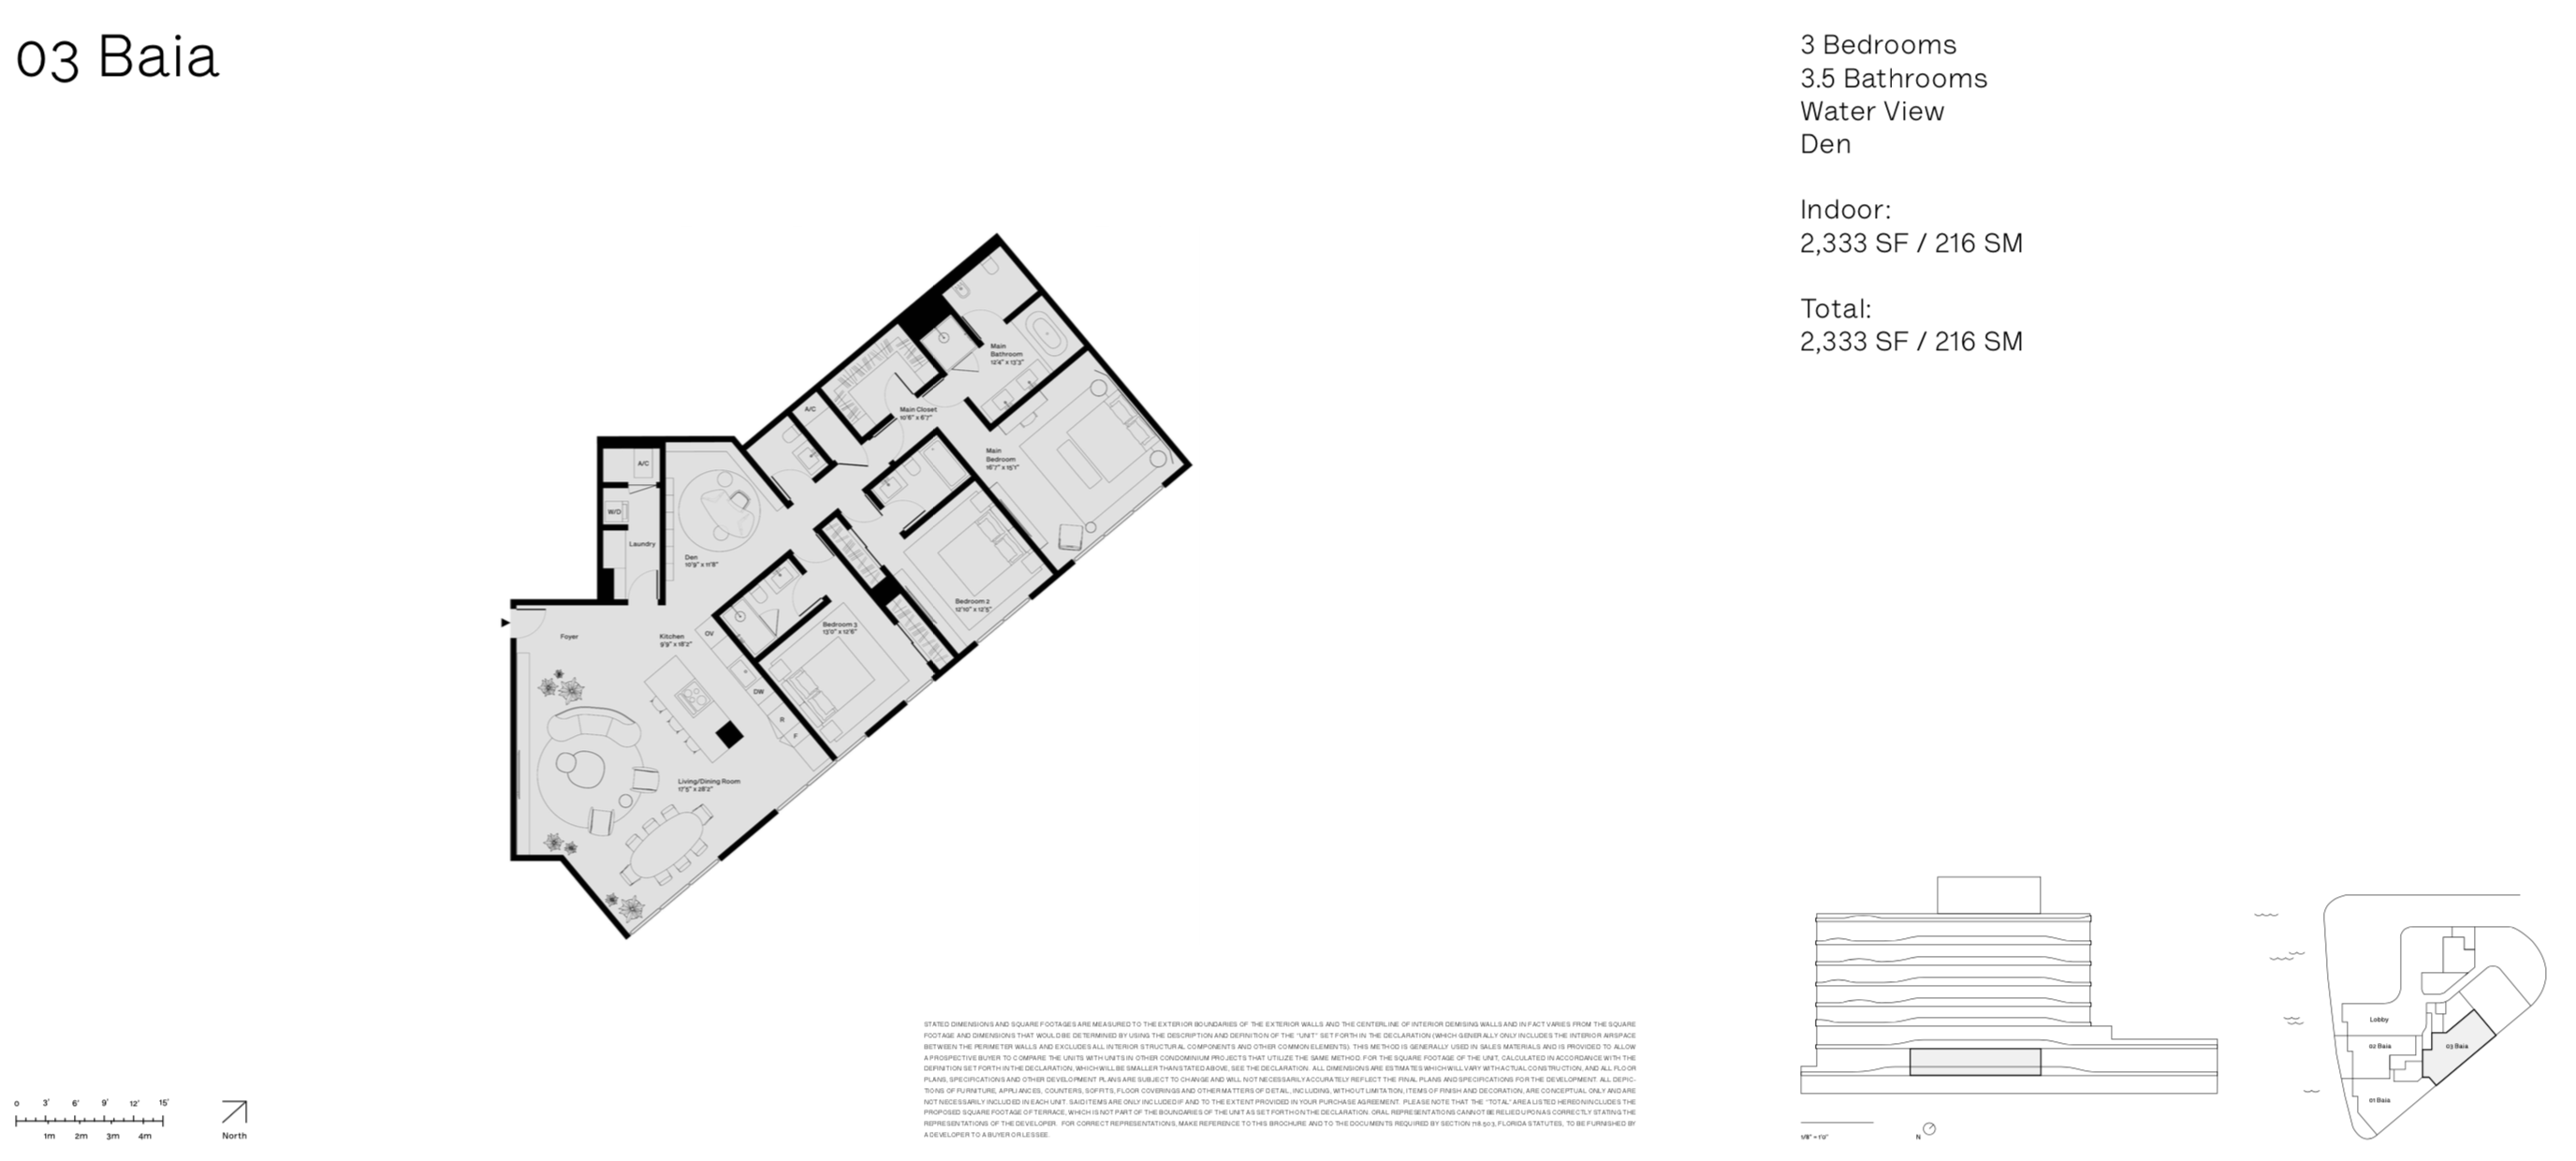 Onda Residences | Baia 03 Line |  Floor 2 | 3 Be + Den | 3.5 Ba | Waterviews | 2,333 SF 